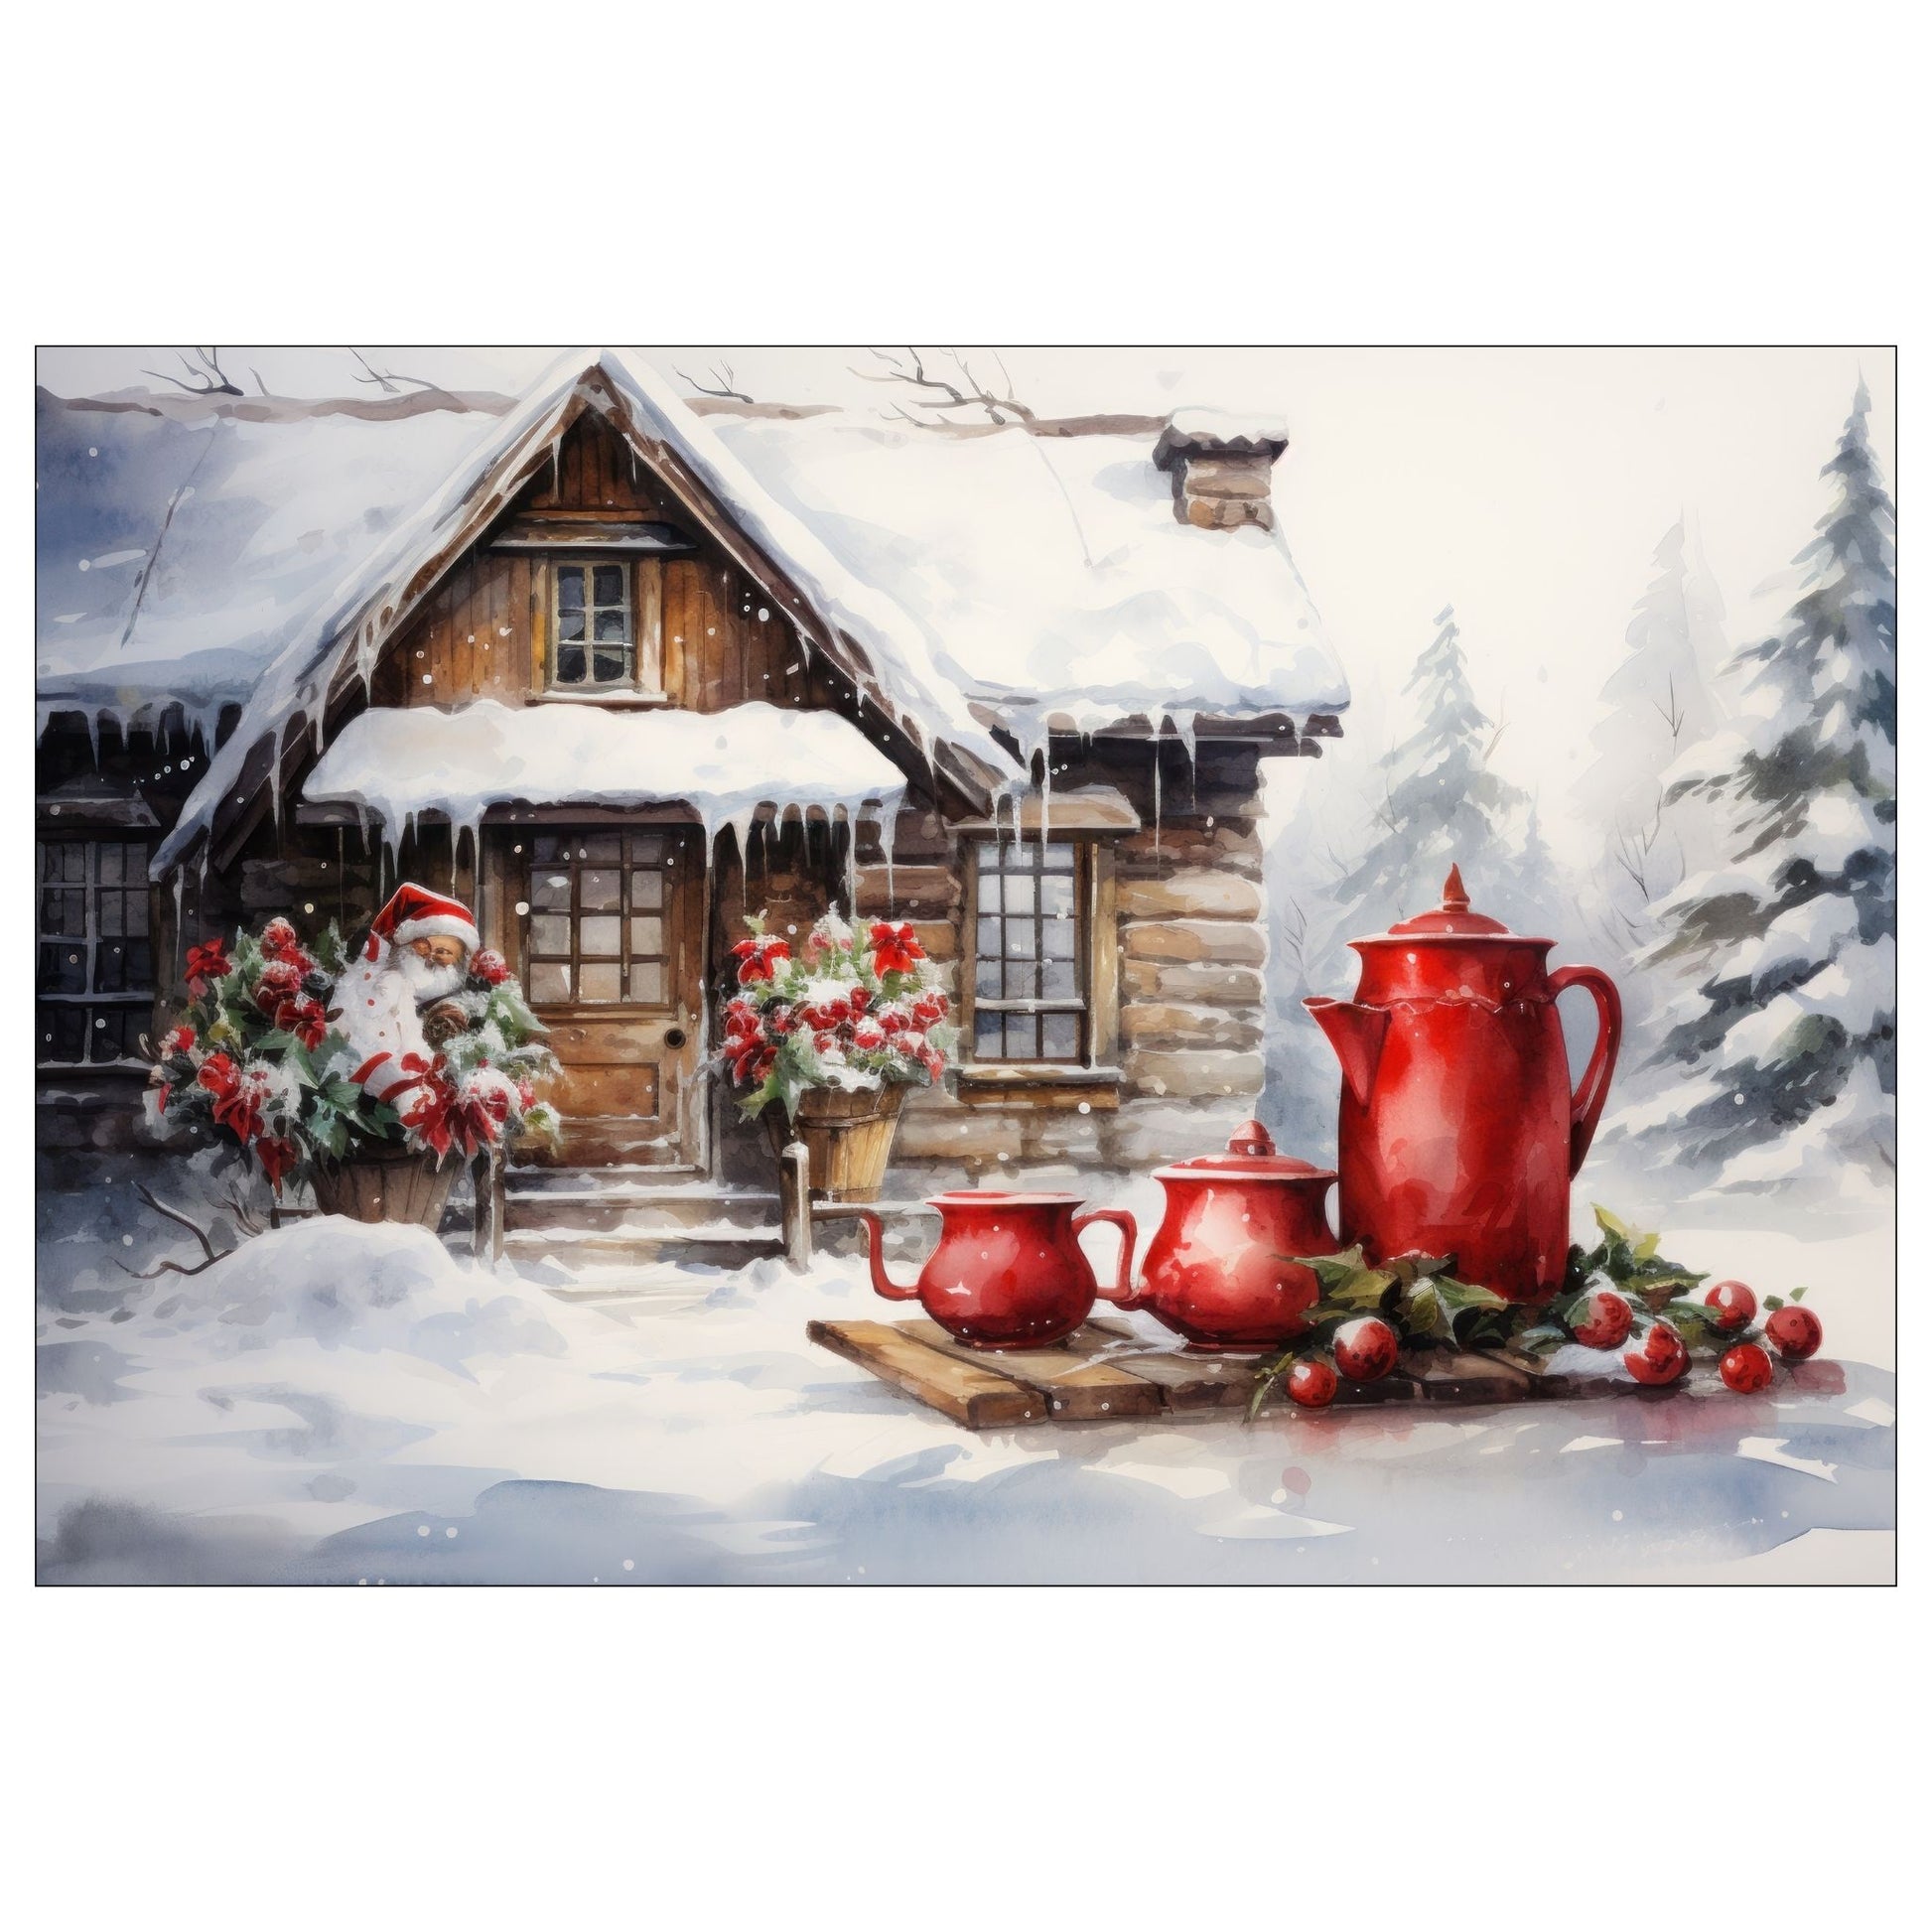 Dekorativt, grafisk julekort av et julepyntet tømmerhus. Ute i snøen står det en rød kaffekanne og to røde kaffekopper. Motivet har et nostalgisk preg.